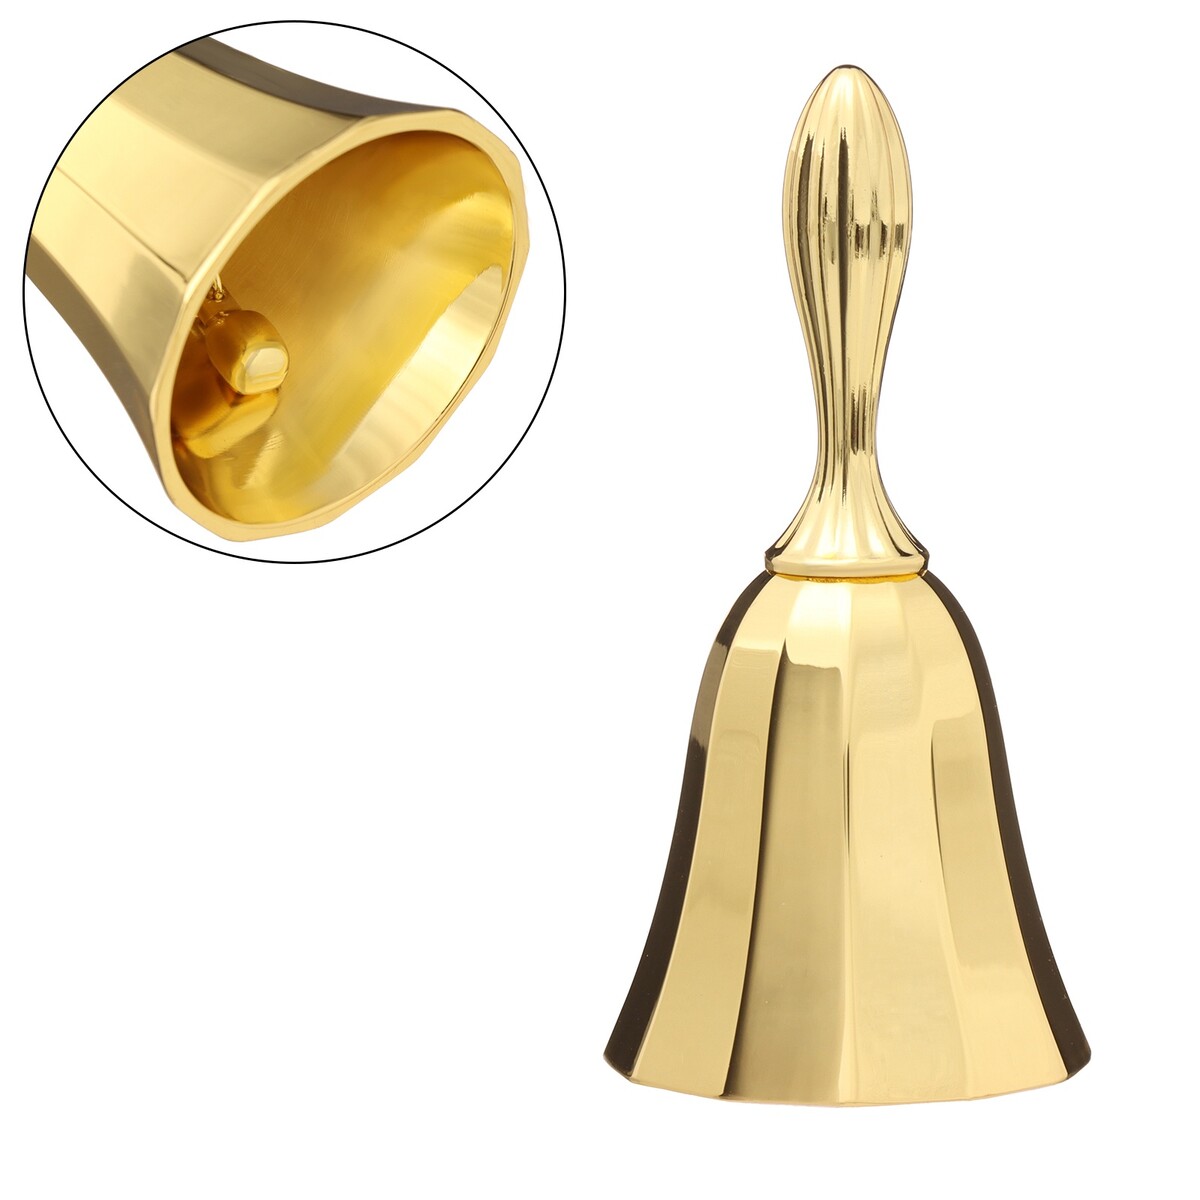 Колокольчик металлический, 10 х 4 см, золото колокольчик металлический с гравюрой 11 3 х 5 4 см золото